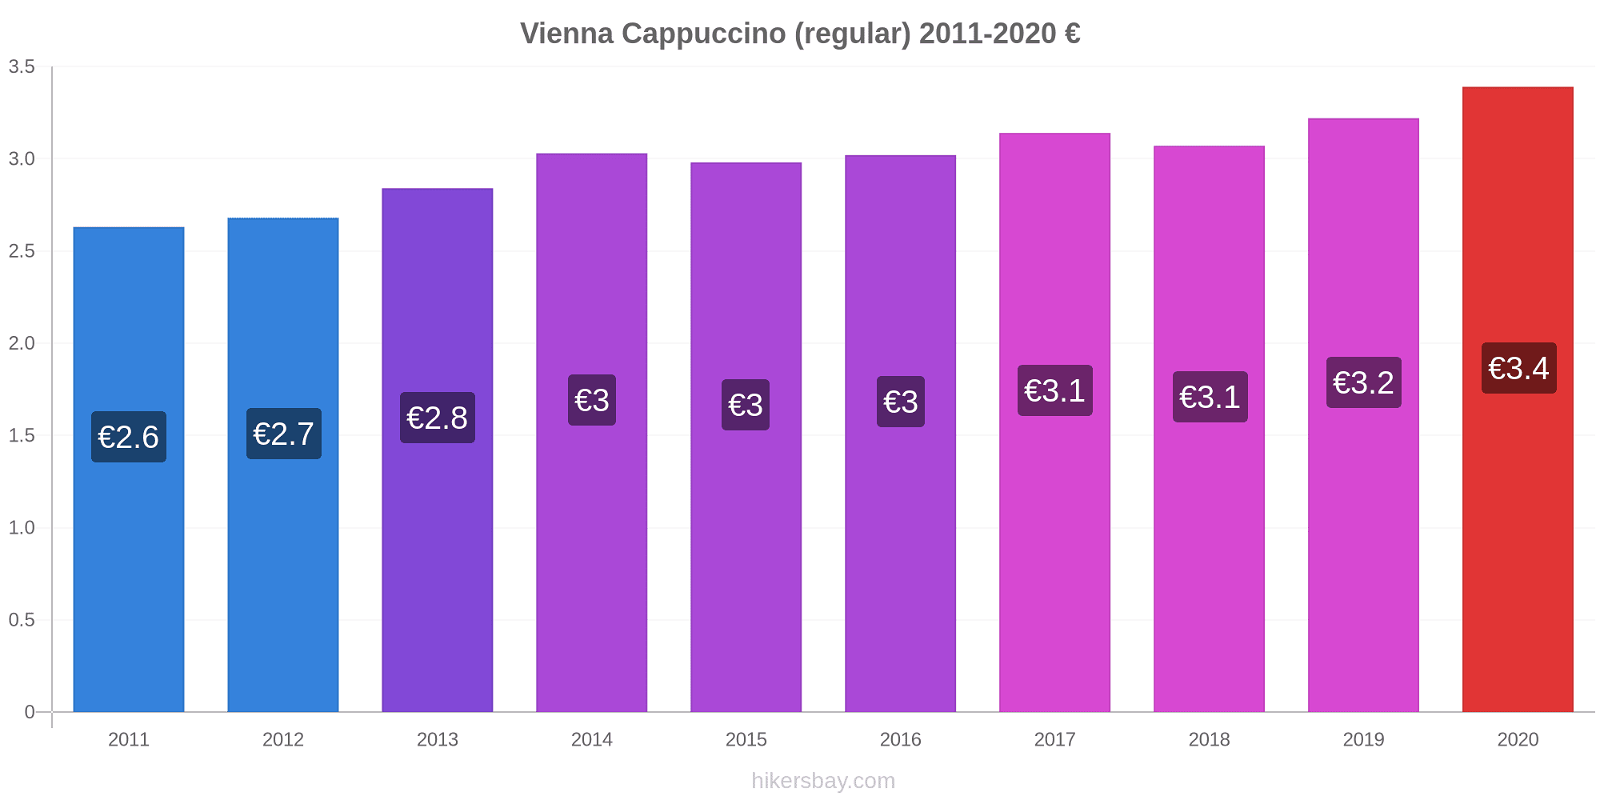 Vienna price changes Cappuccino (regular) hikersbay.com